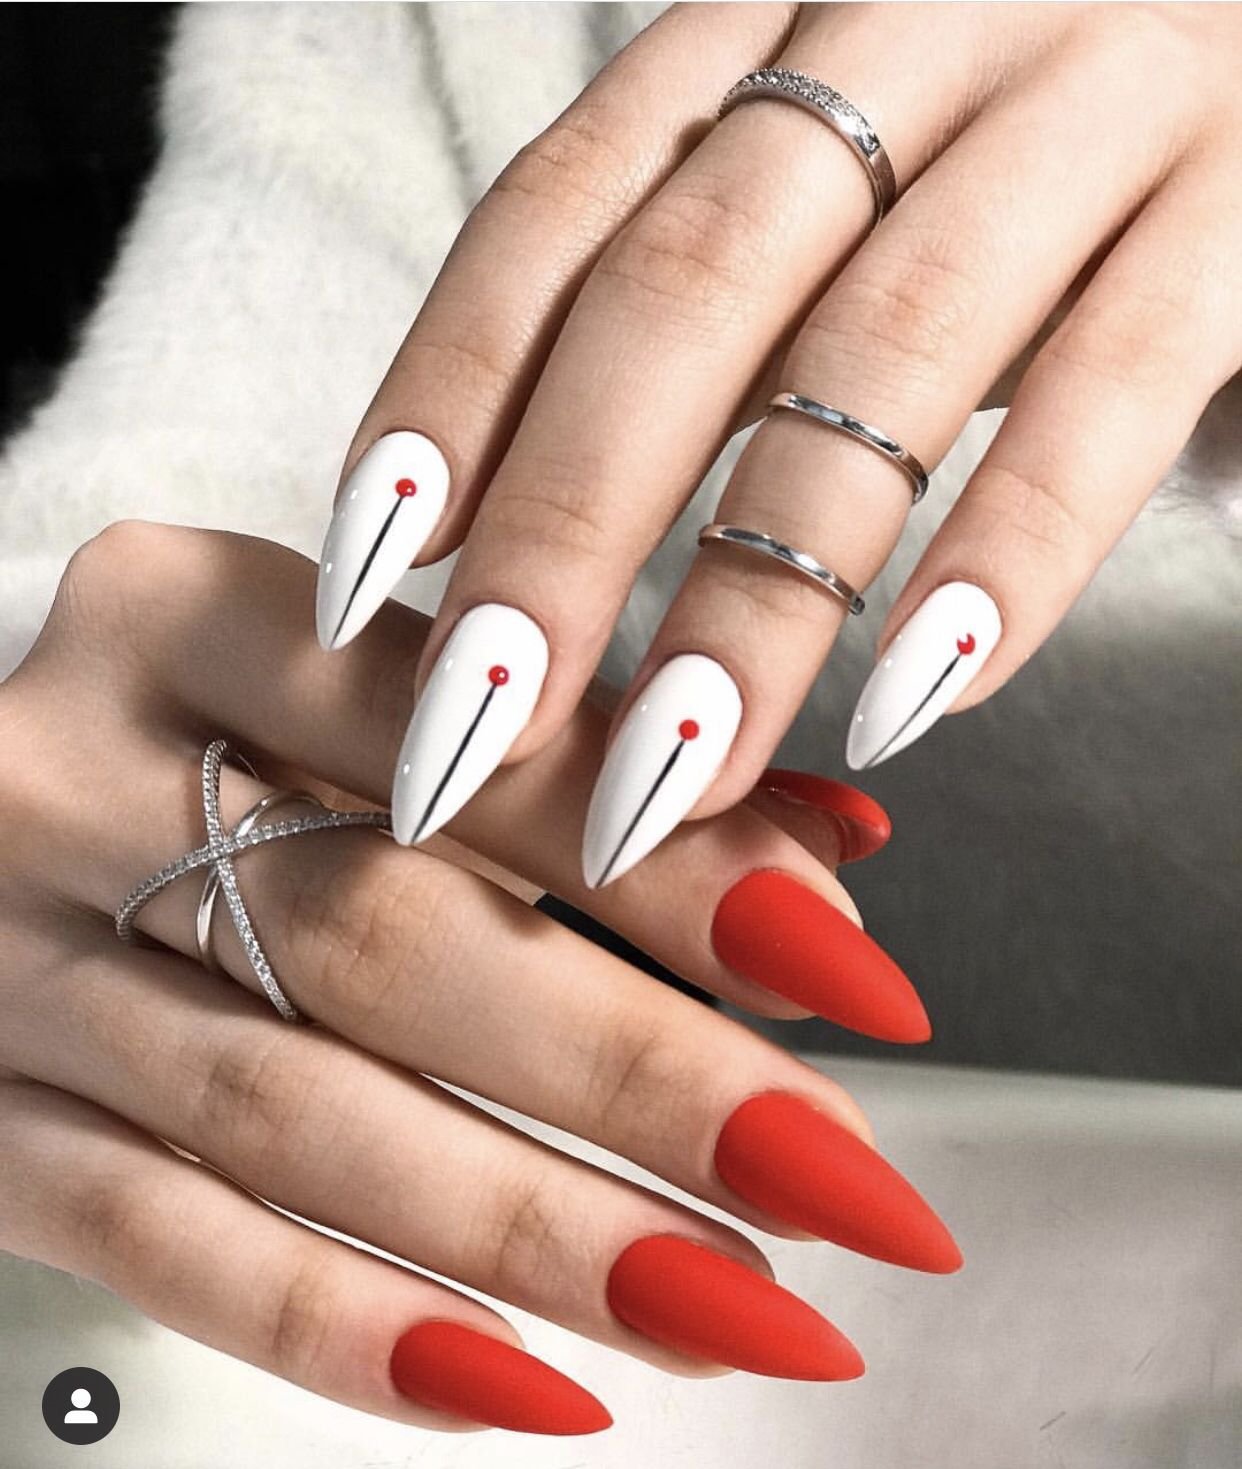 Дизайн ногтей острые красные. Маникюр на длинные ногти острые красные с белым. Красивый маникюр на острые ногти. Маникюр на длинные ногти острые. Красный маникюр на длинные острые ногти.